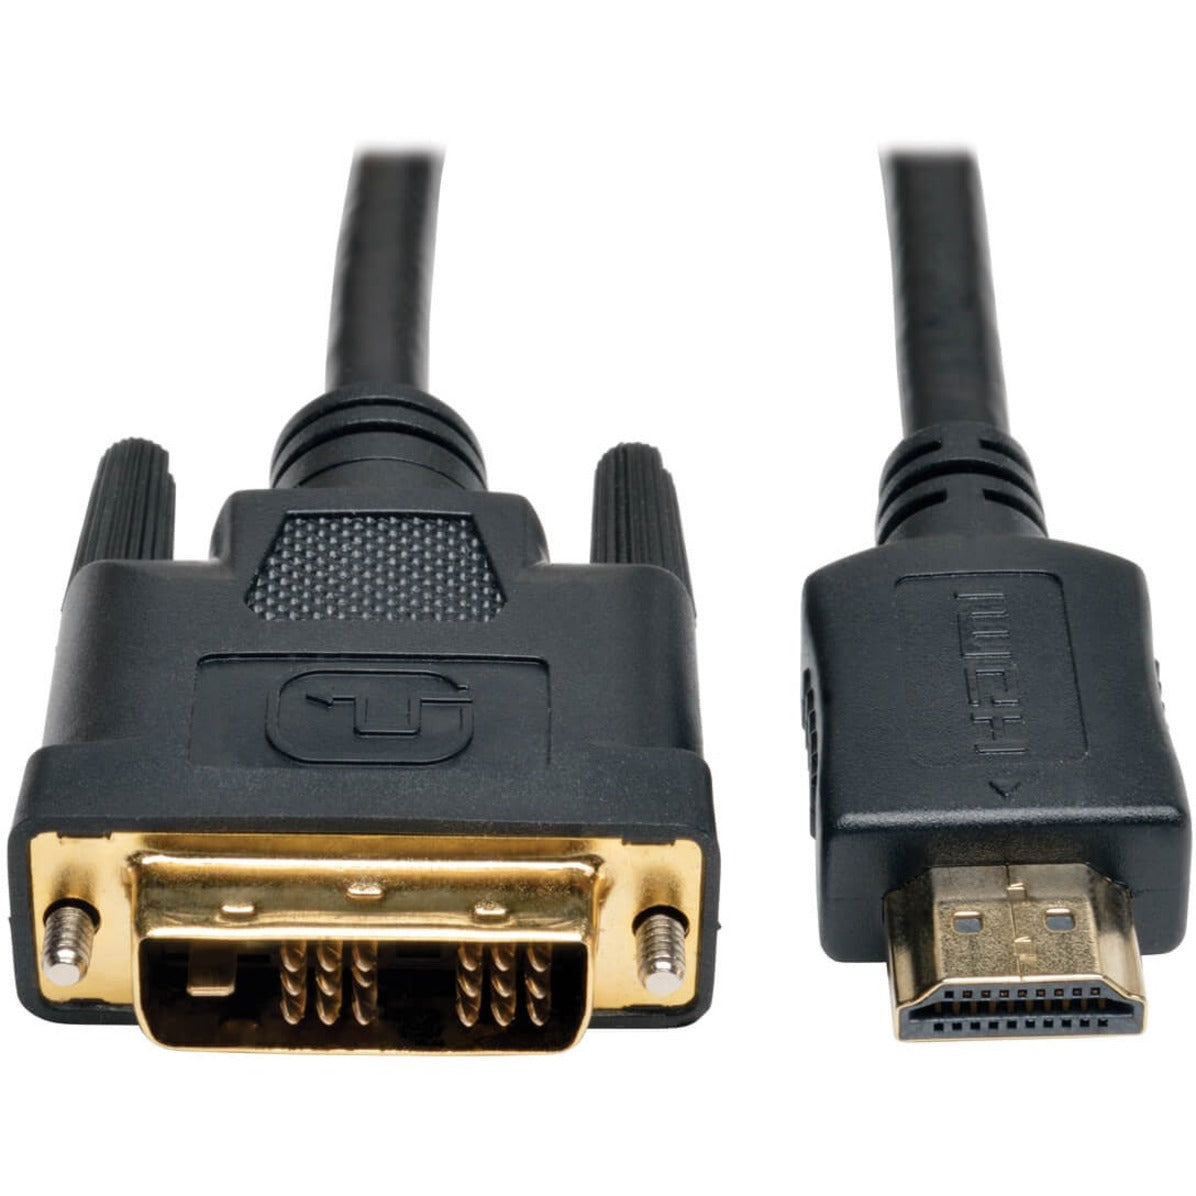 Tripp Lite P566-020 HDMI to DVI Câble 20-pi EMI/RF Protection Connecteurs plaqués or